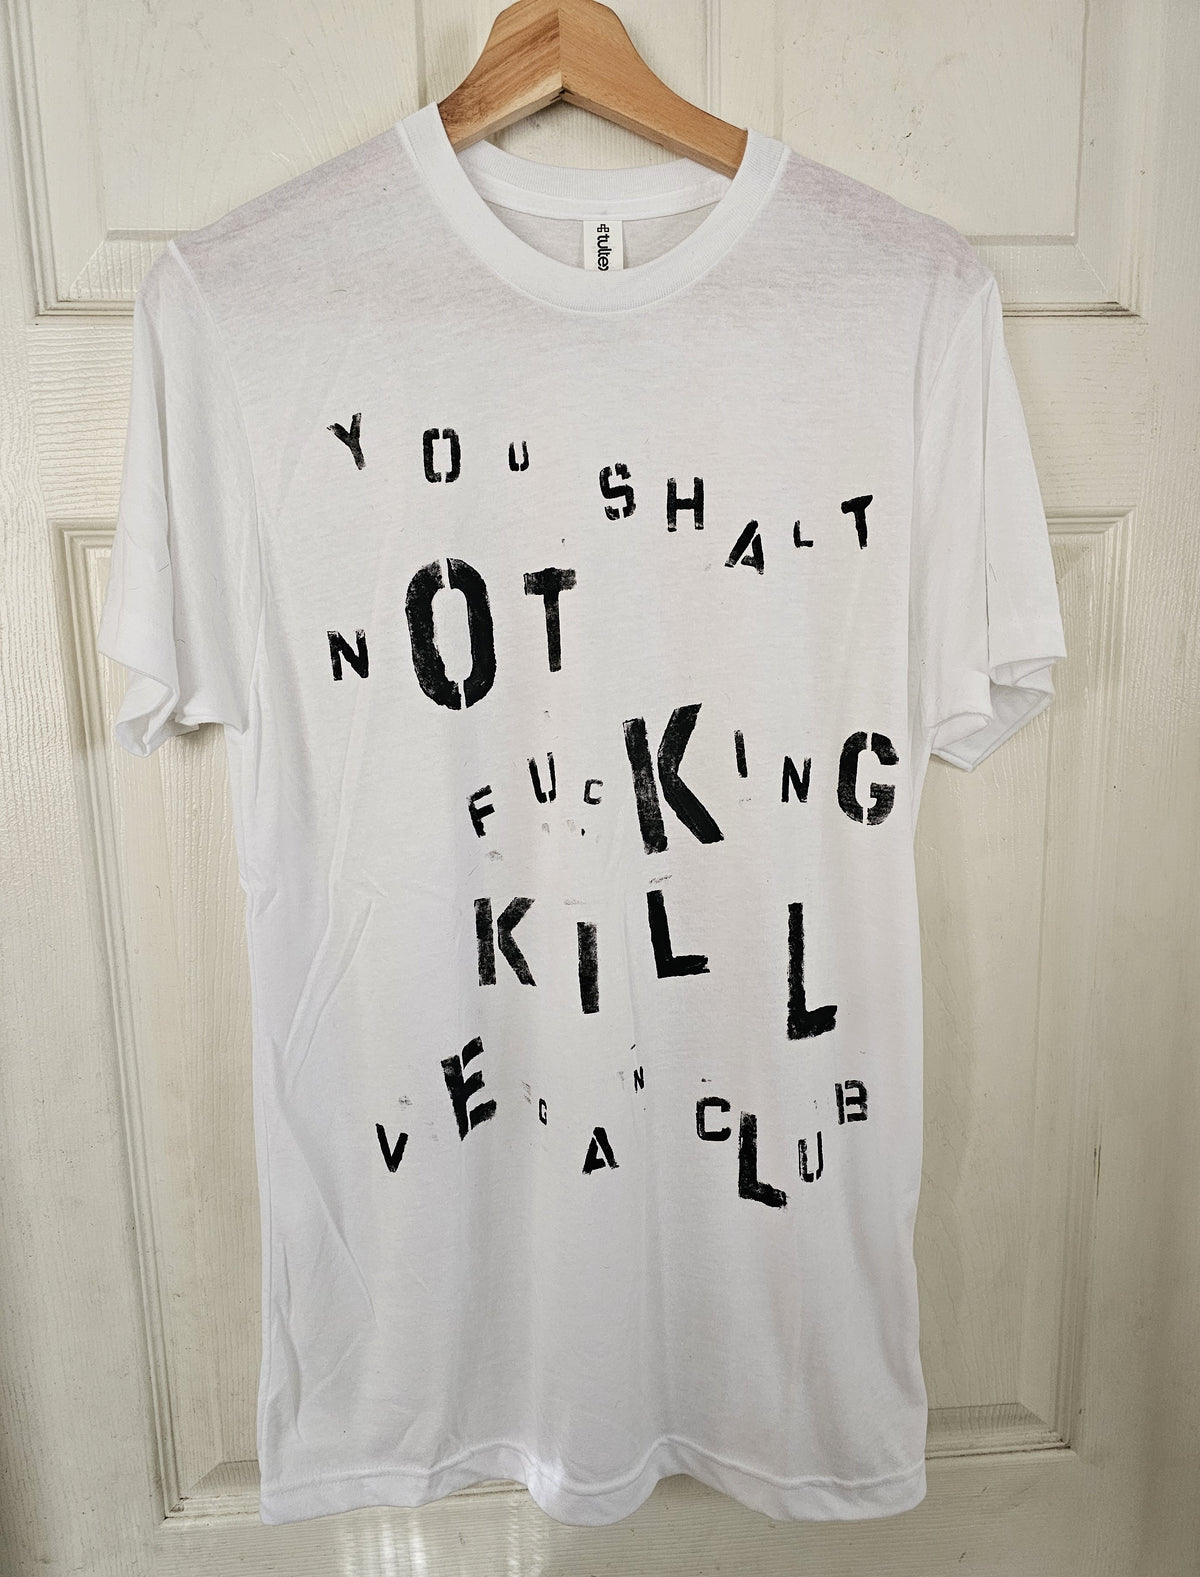 You Shalt Not Fucking Kill Vegan Club t-shirt